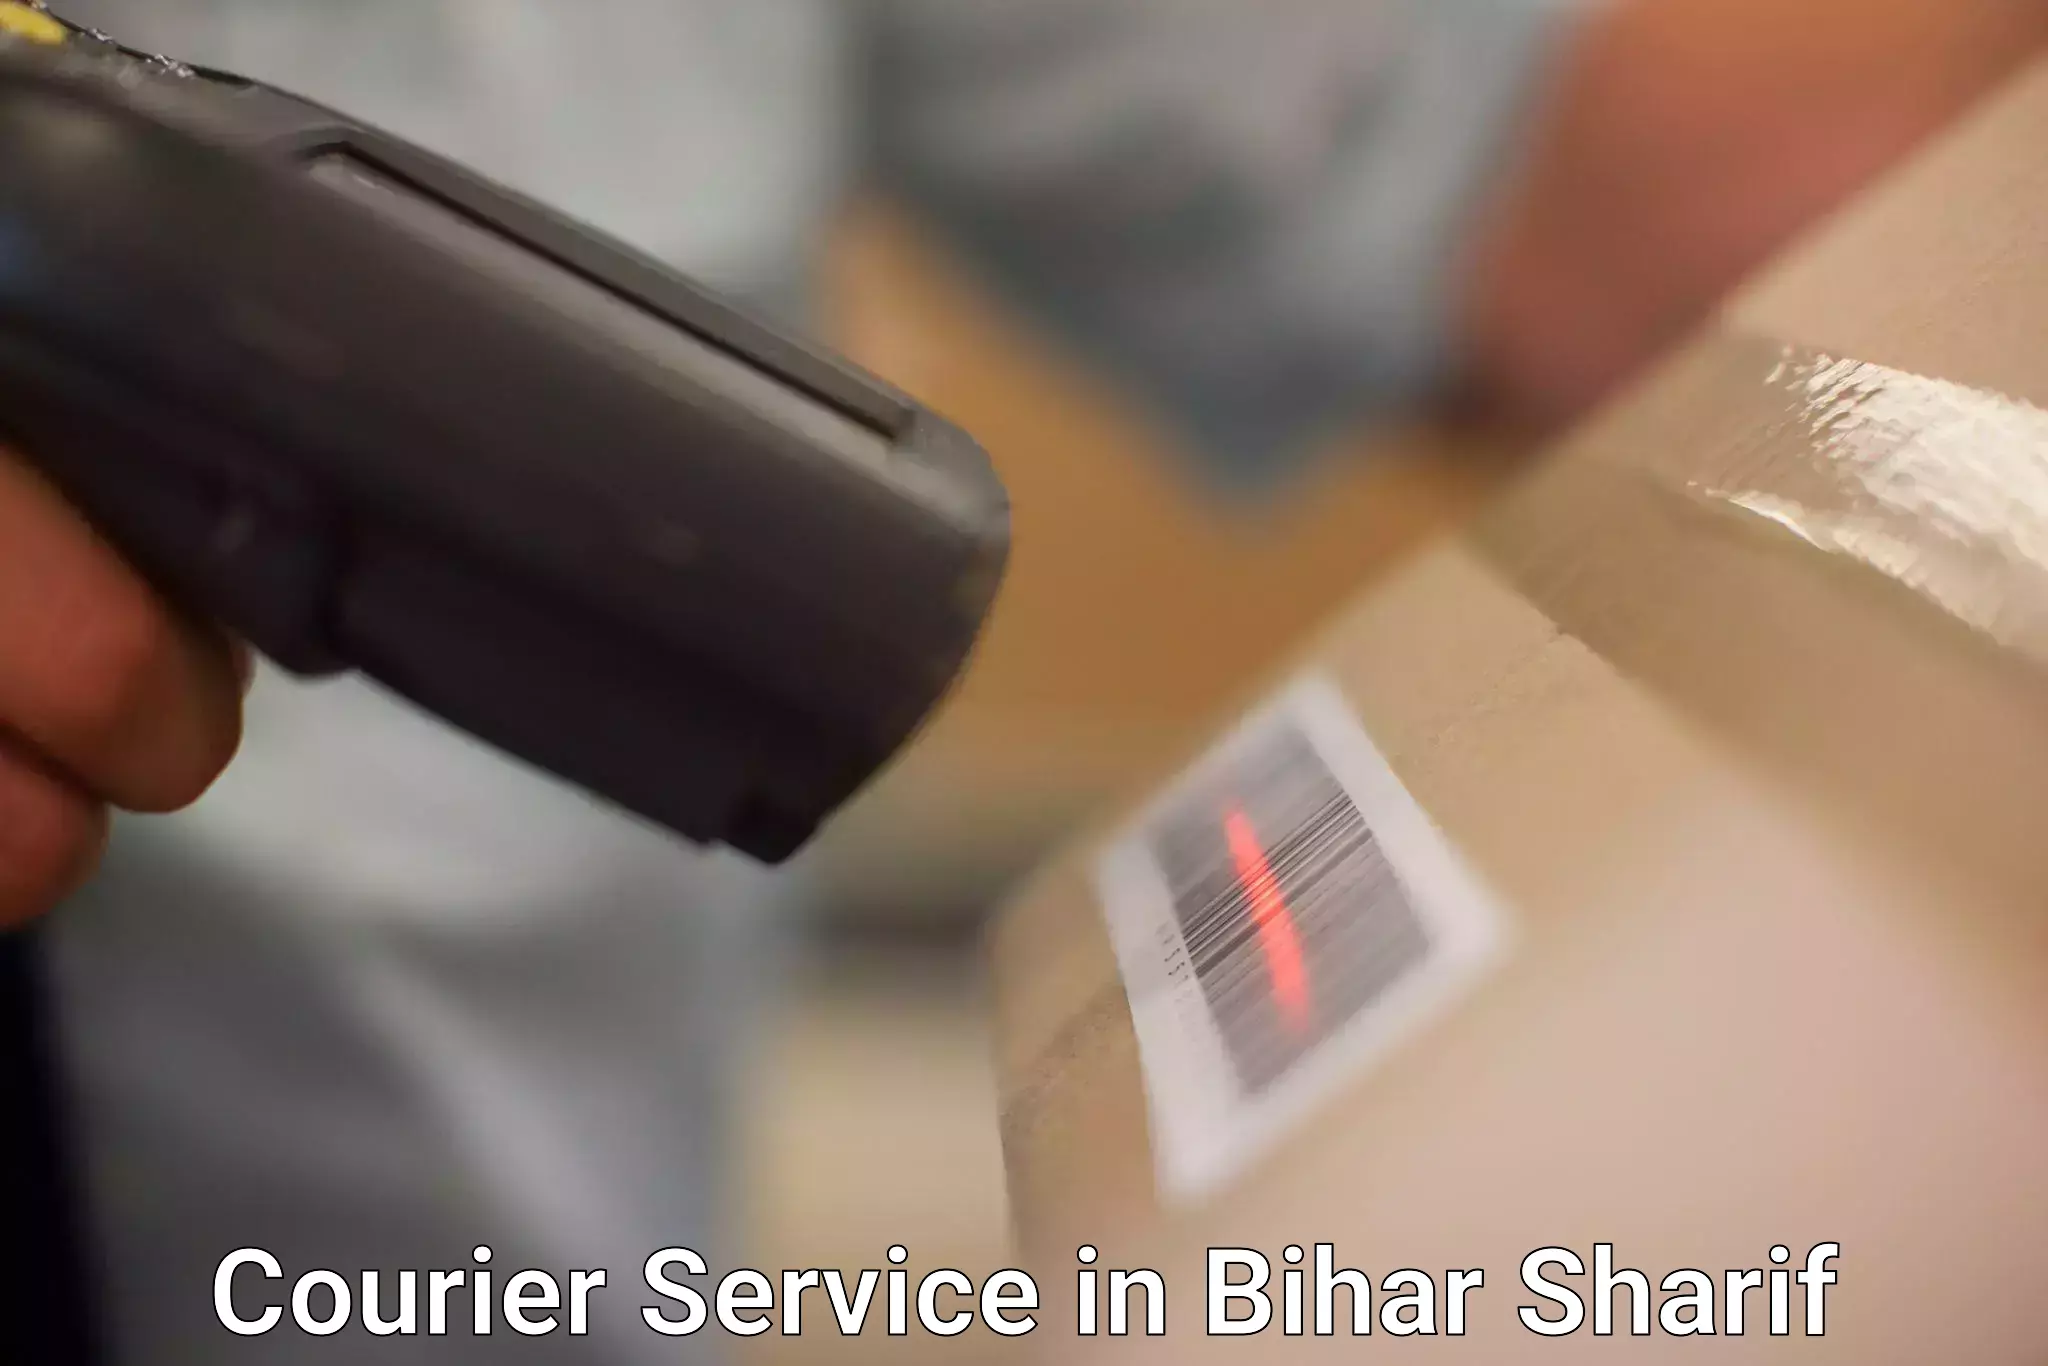 Versatile courier offerings in Bihar Sharif